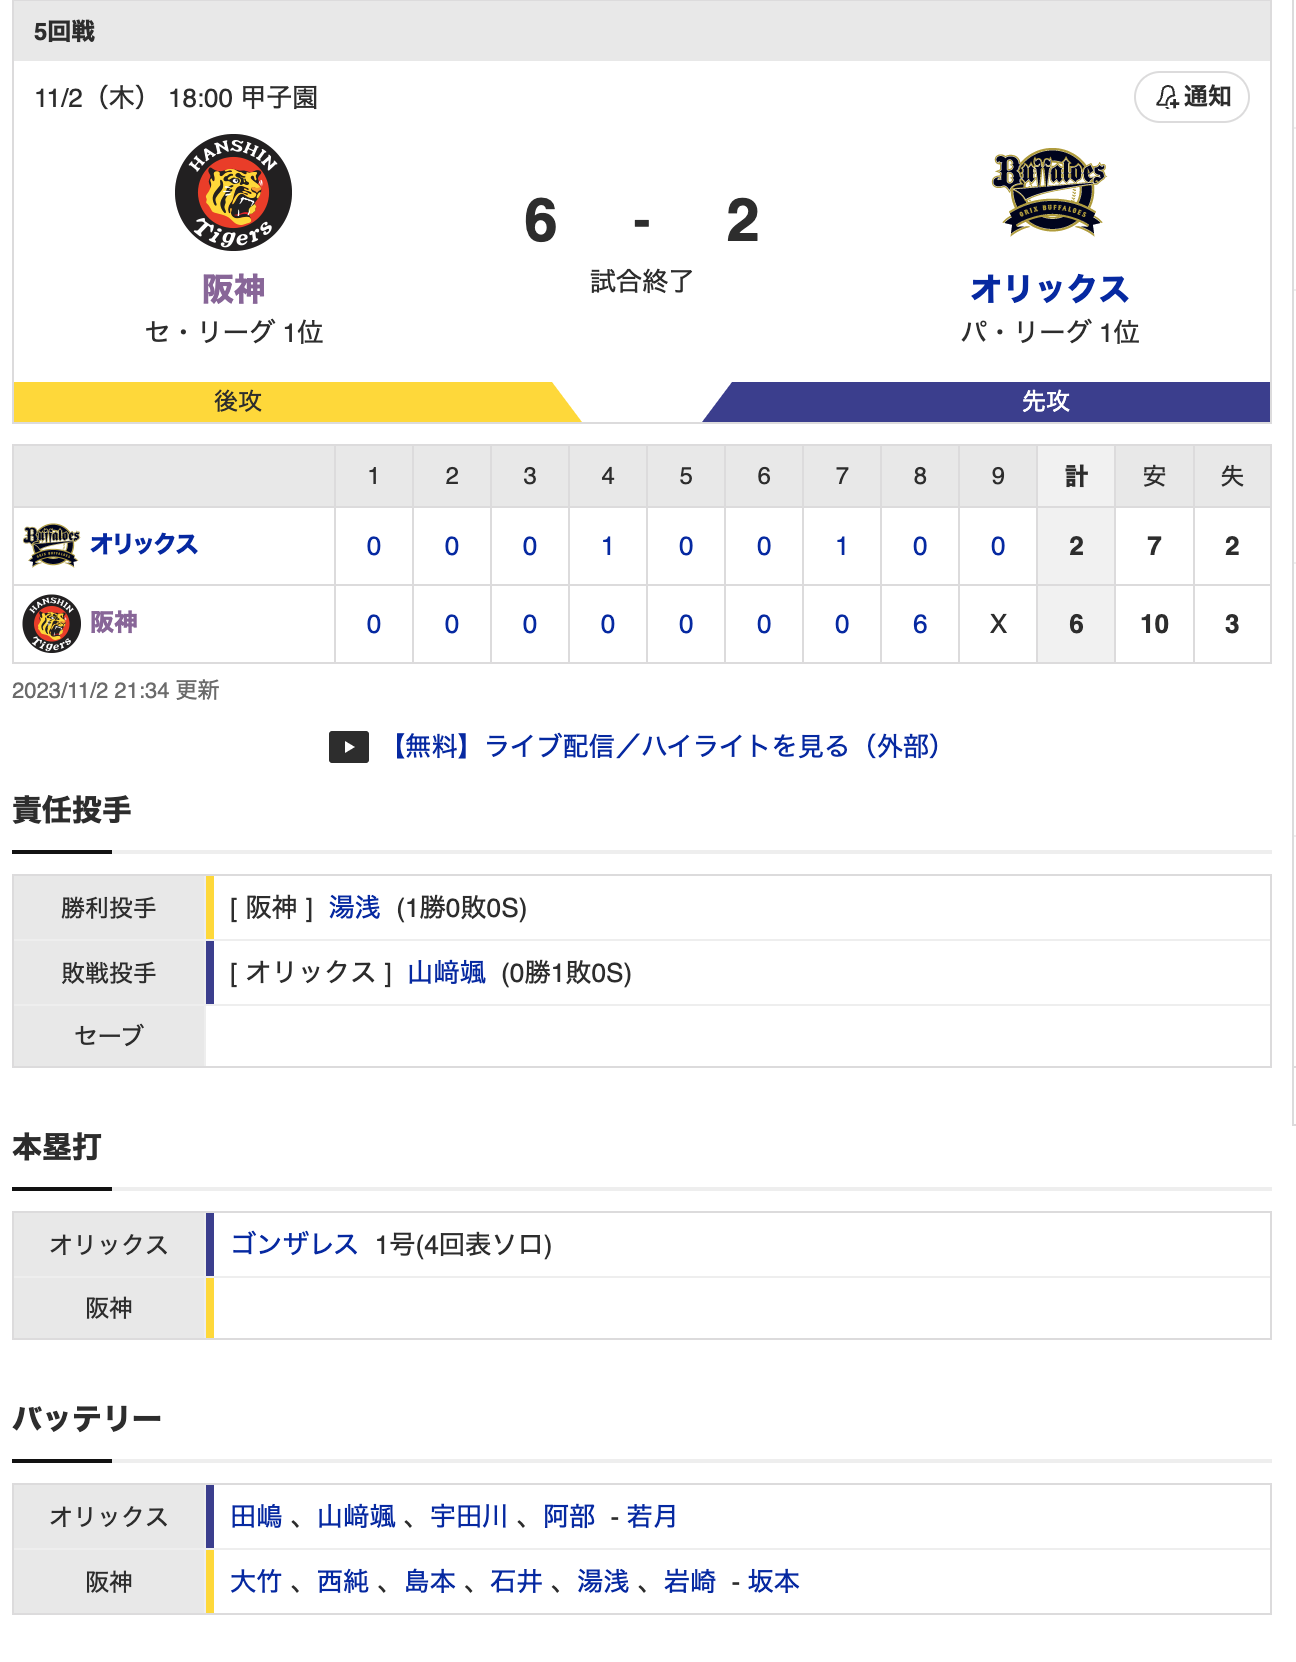 日本シリーズ第5戦 T 6-2 B [11/2]　阪神逆転勝ち！3勝2敗日本一に王手！8回打者一巡6得点！　オリックス継投失敗